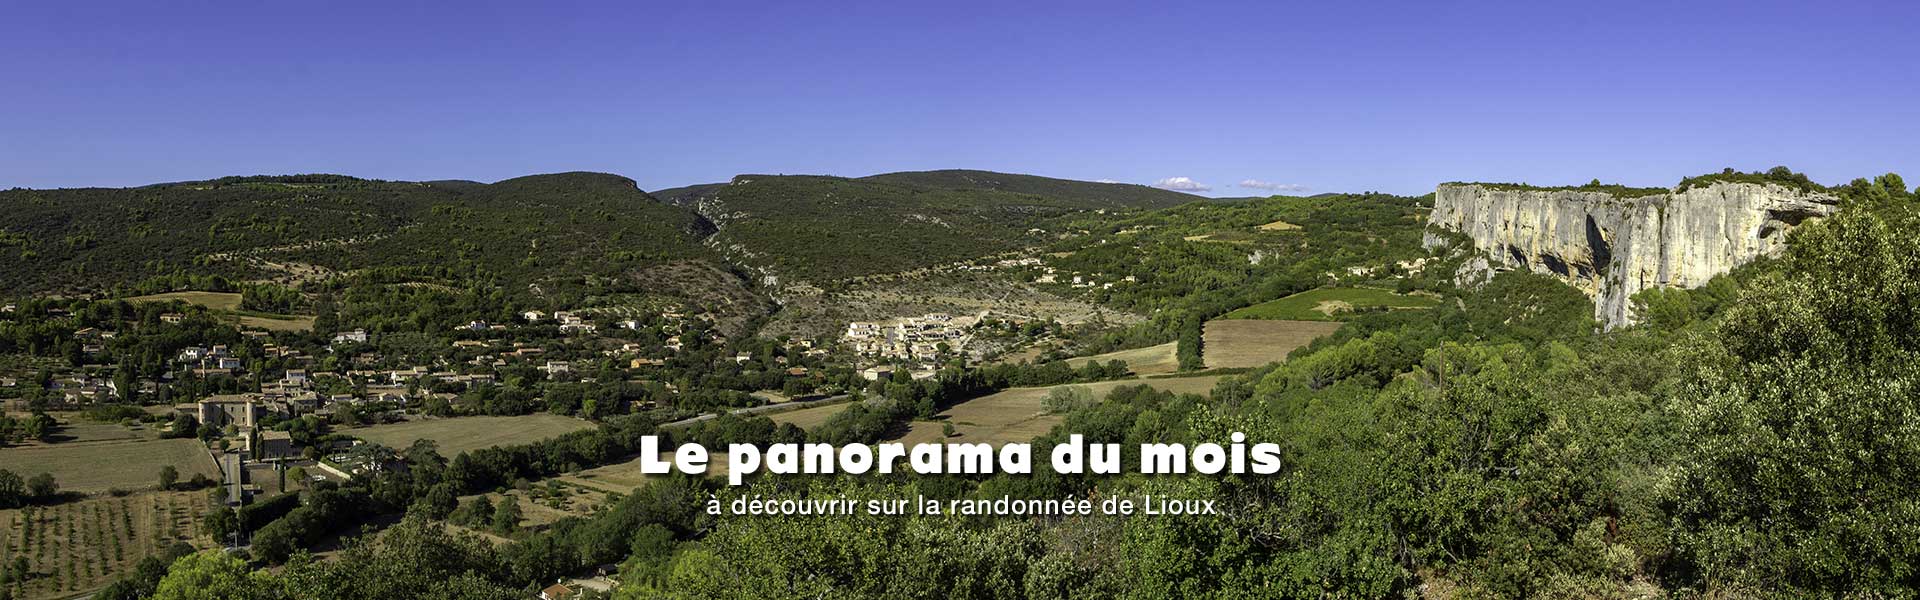 Panorama à découvrir sur la randonnée de Lioux